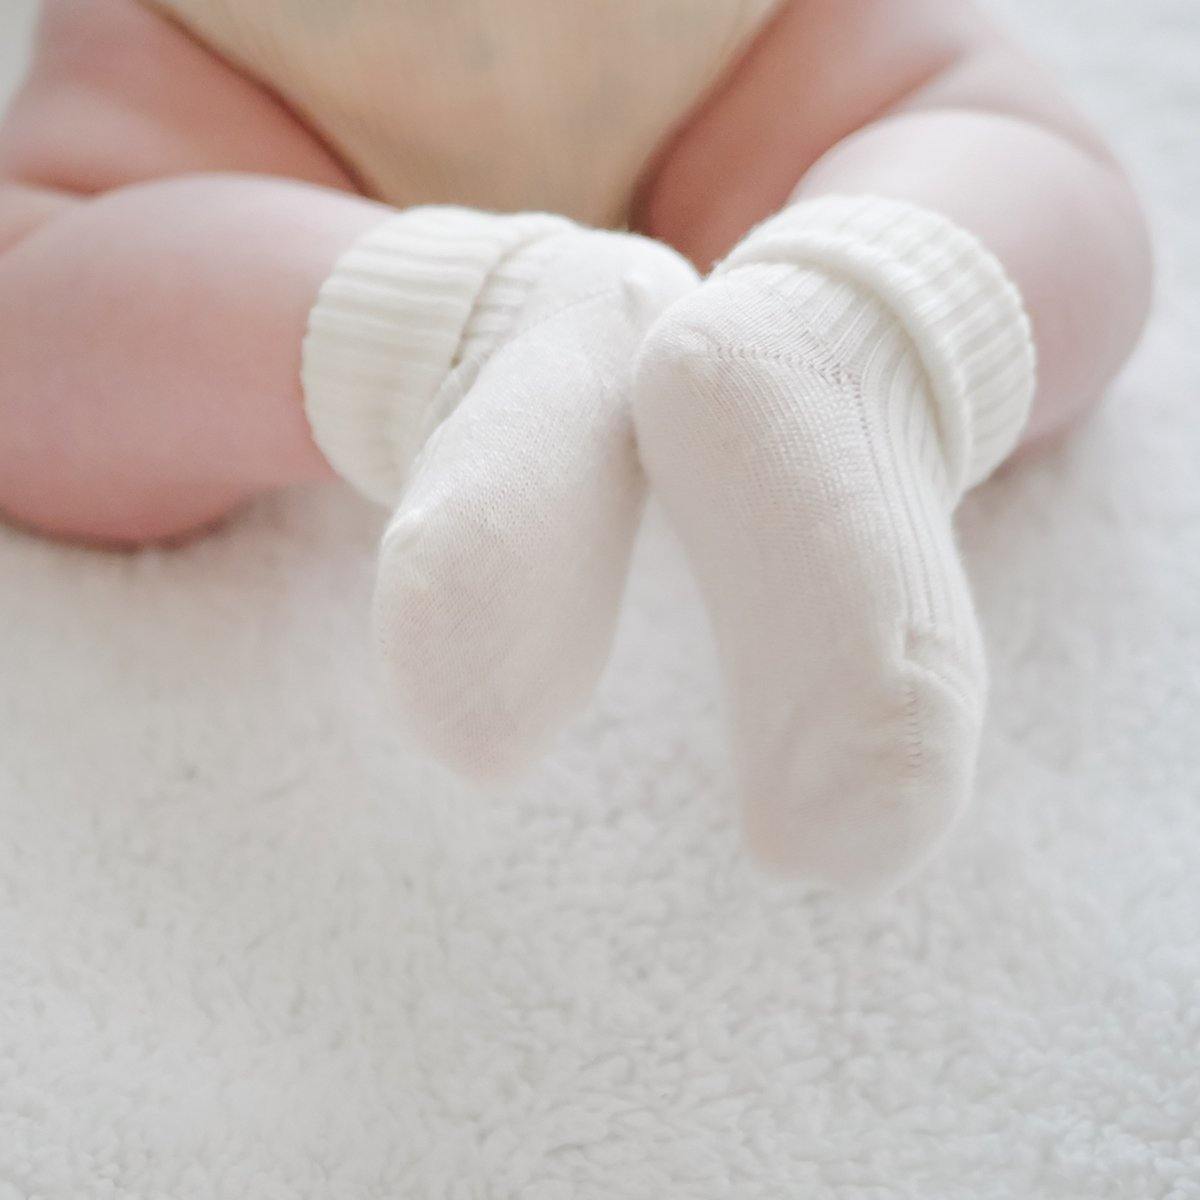 Baby wearing Woolino Baby Wool Socks - 2 Pairs - Gray/White